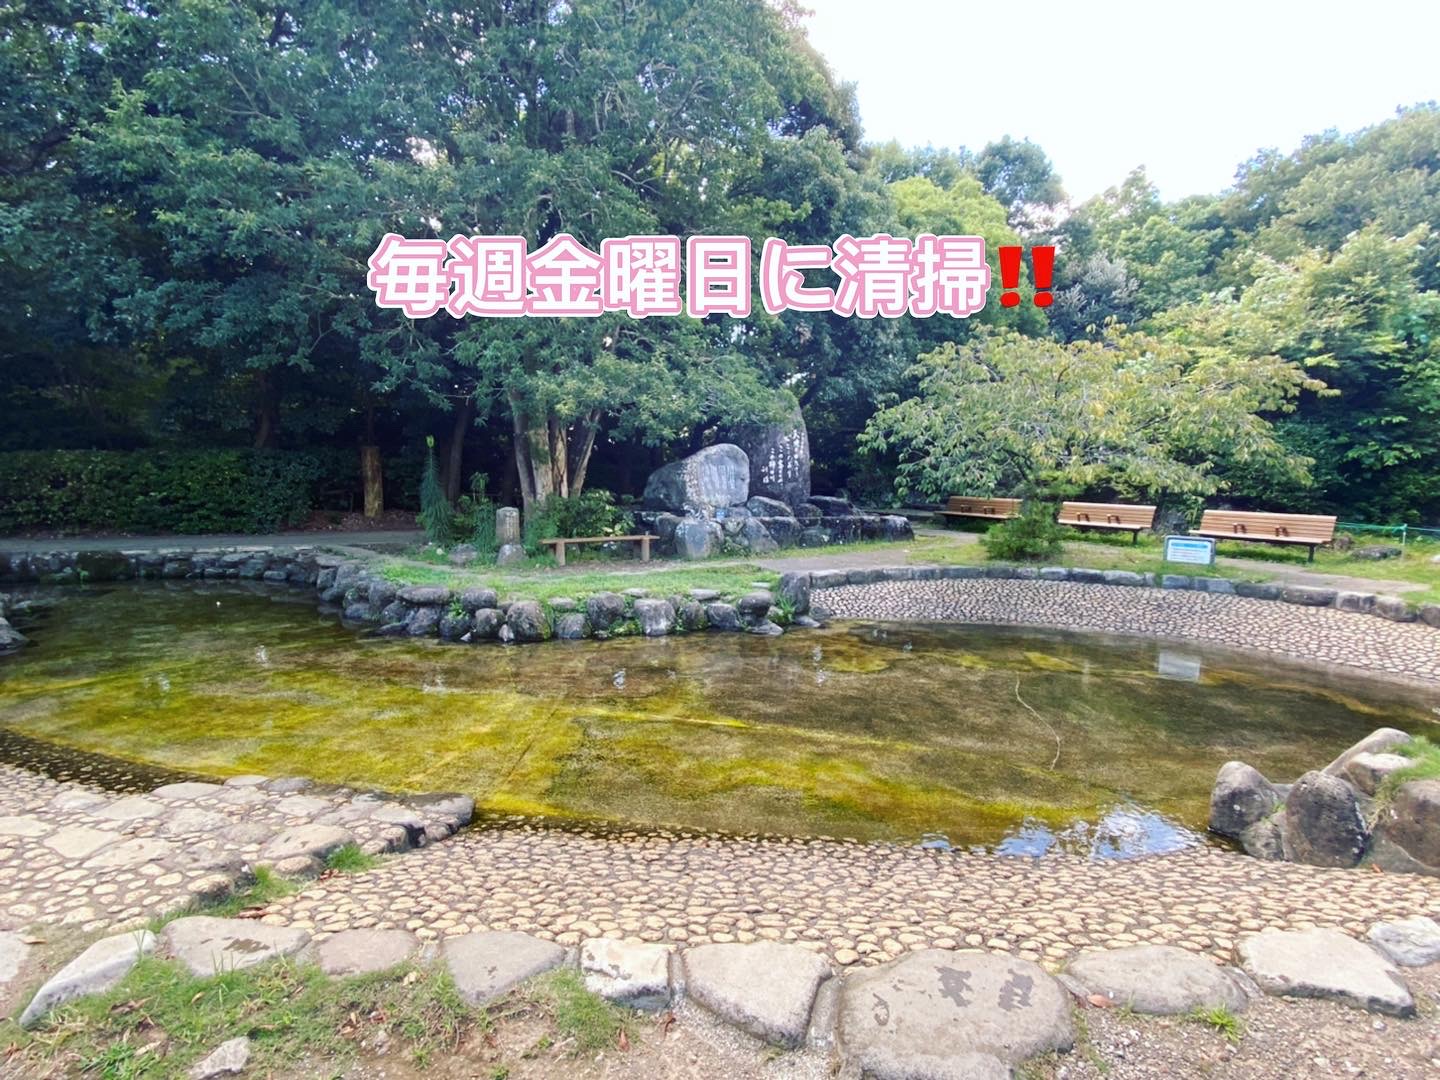 柿田川公園 せせらぎ池についてのお知らせ📢